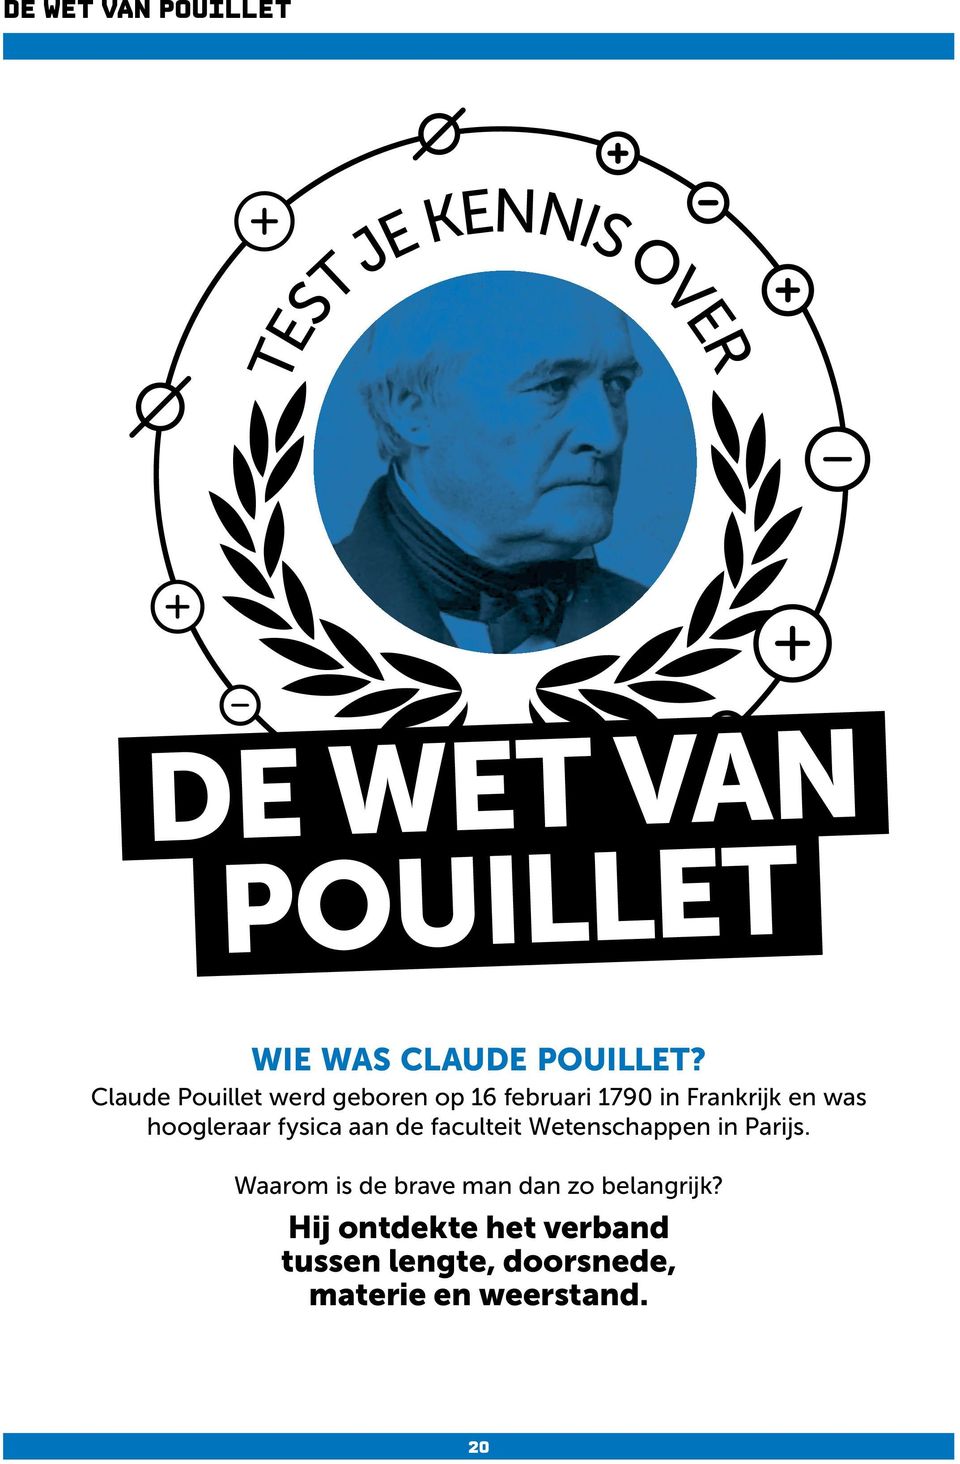 Claude Pouillet werd geboren op 16 februari 1790 in Frankrijk en was hoogleraar